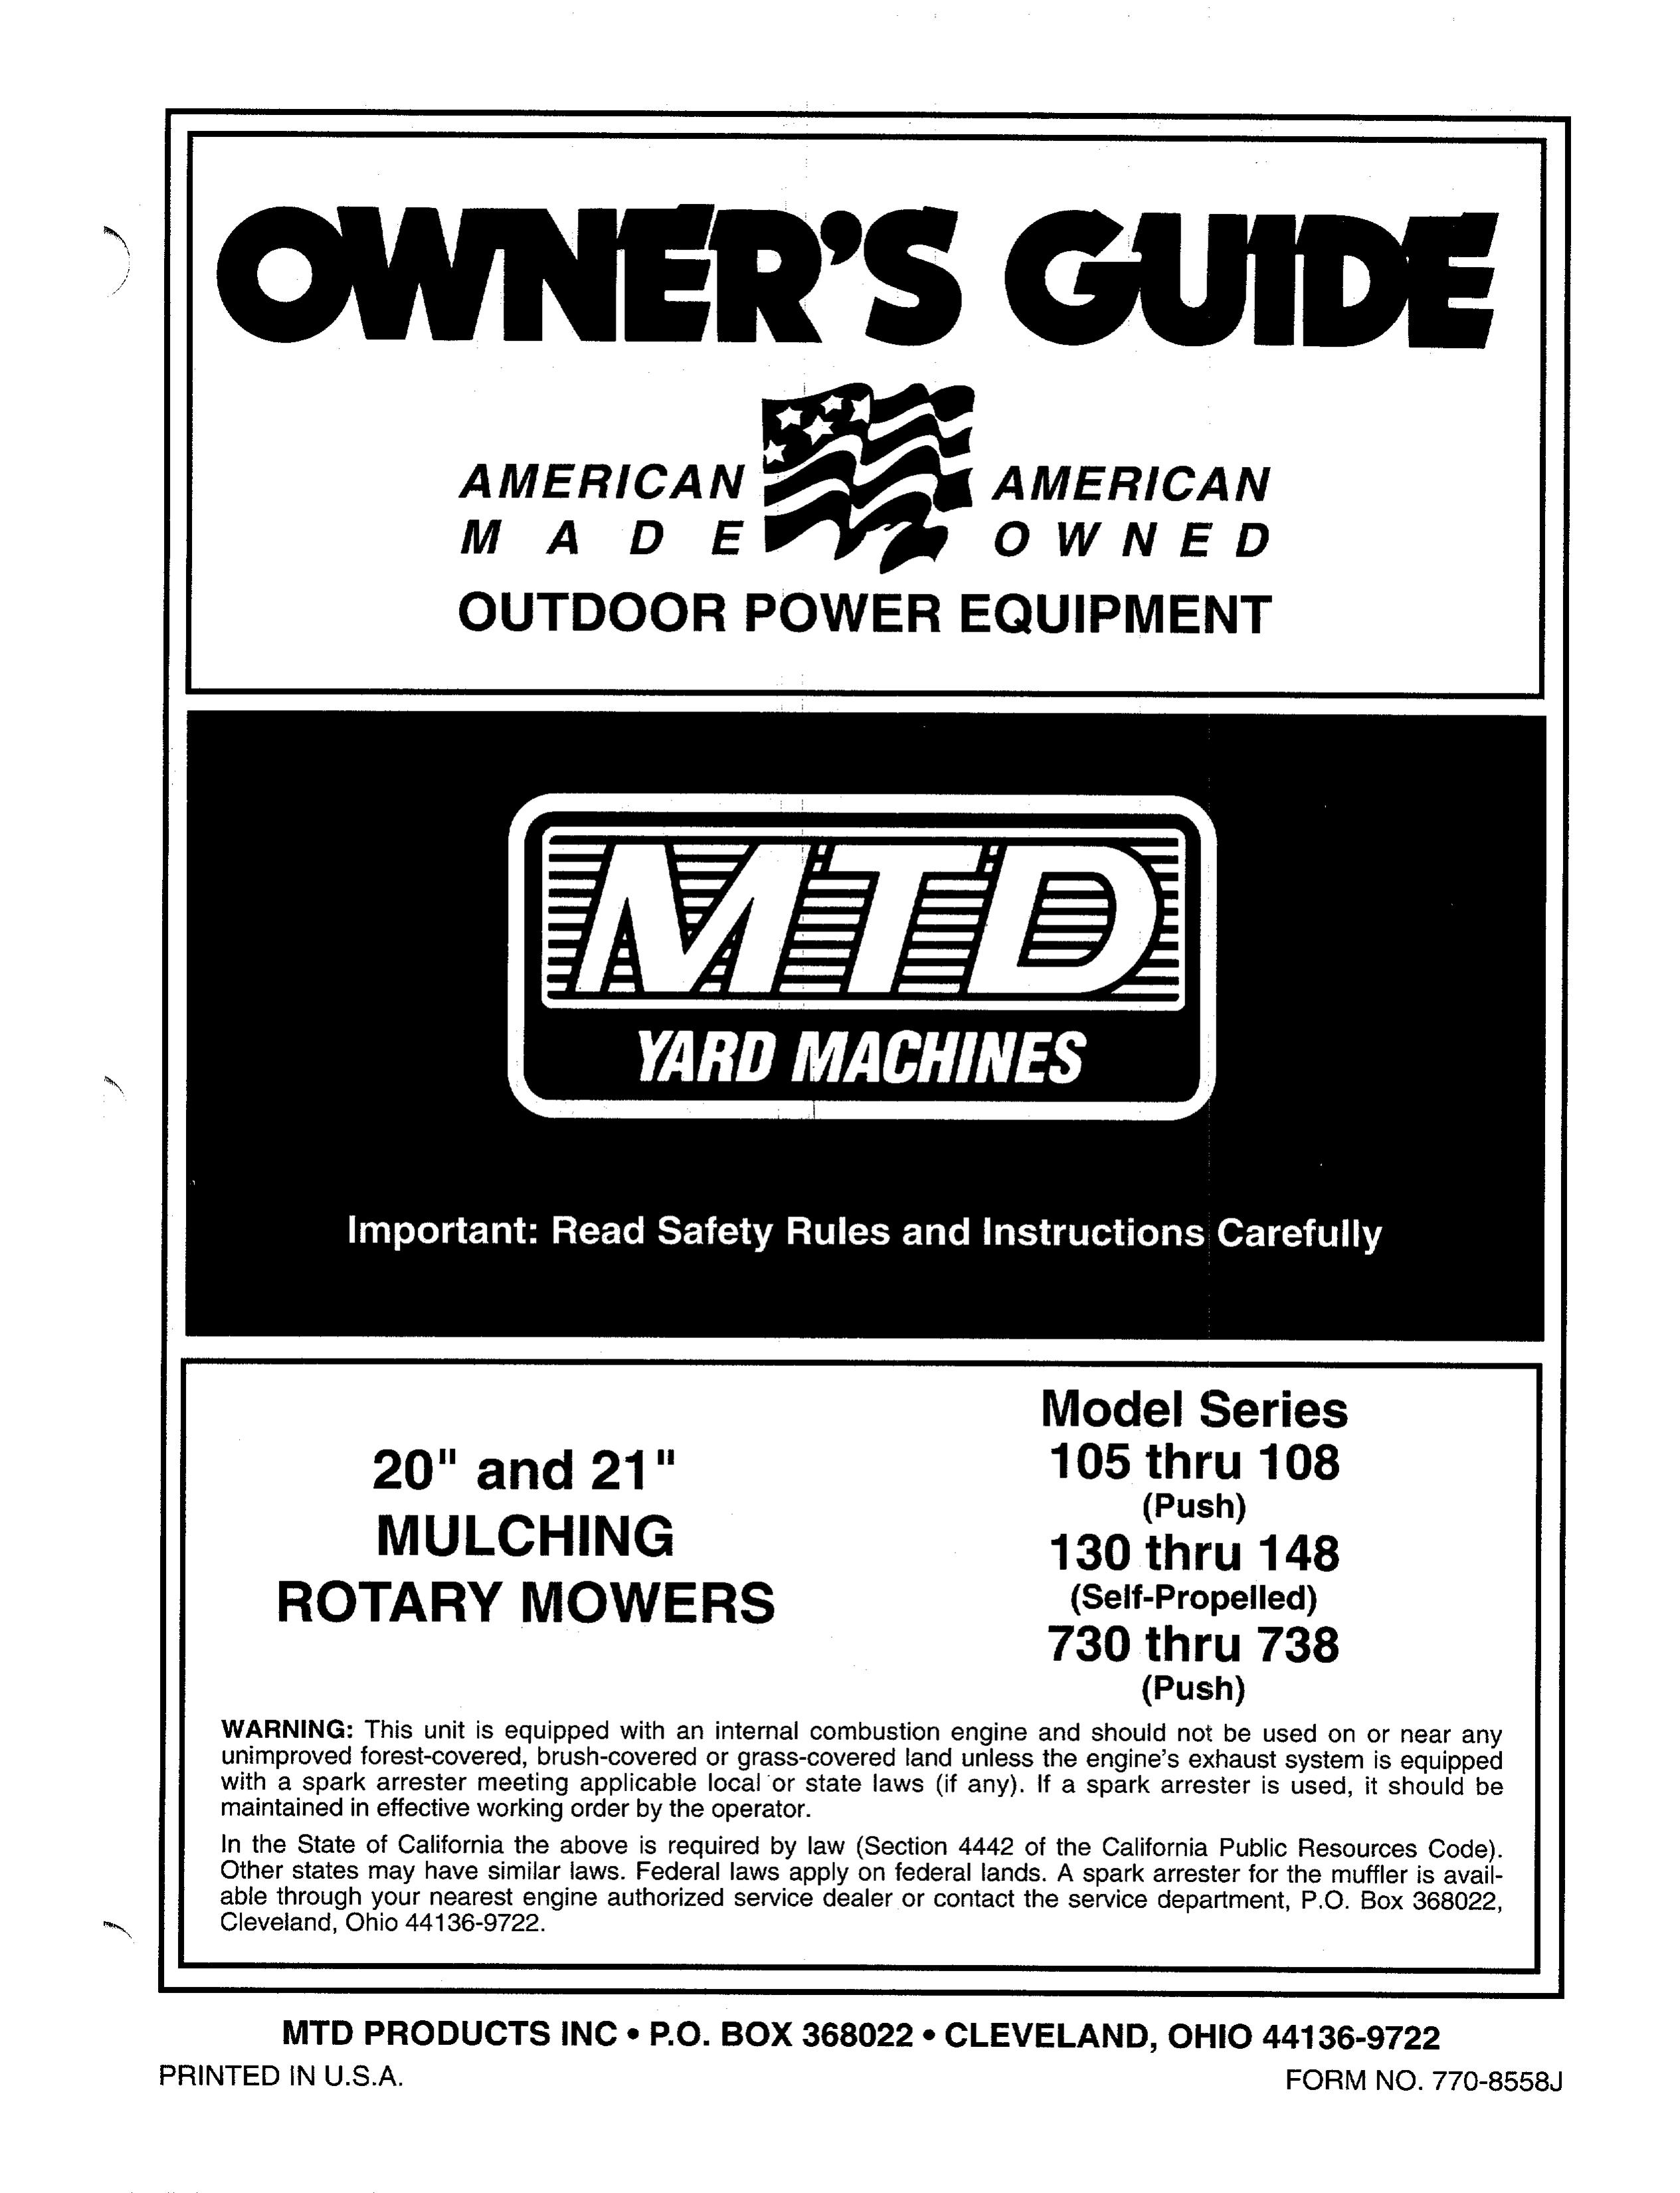 MTD 105 thru 108 Series, 130 thru 148 Series, 730 thru 738 Series Lawn Mower User Manual